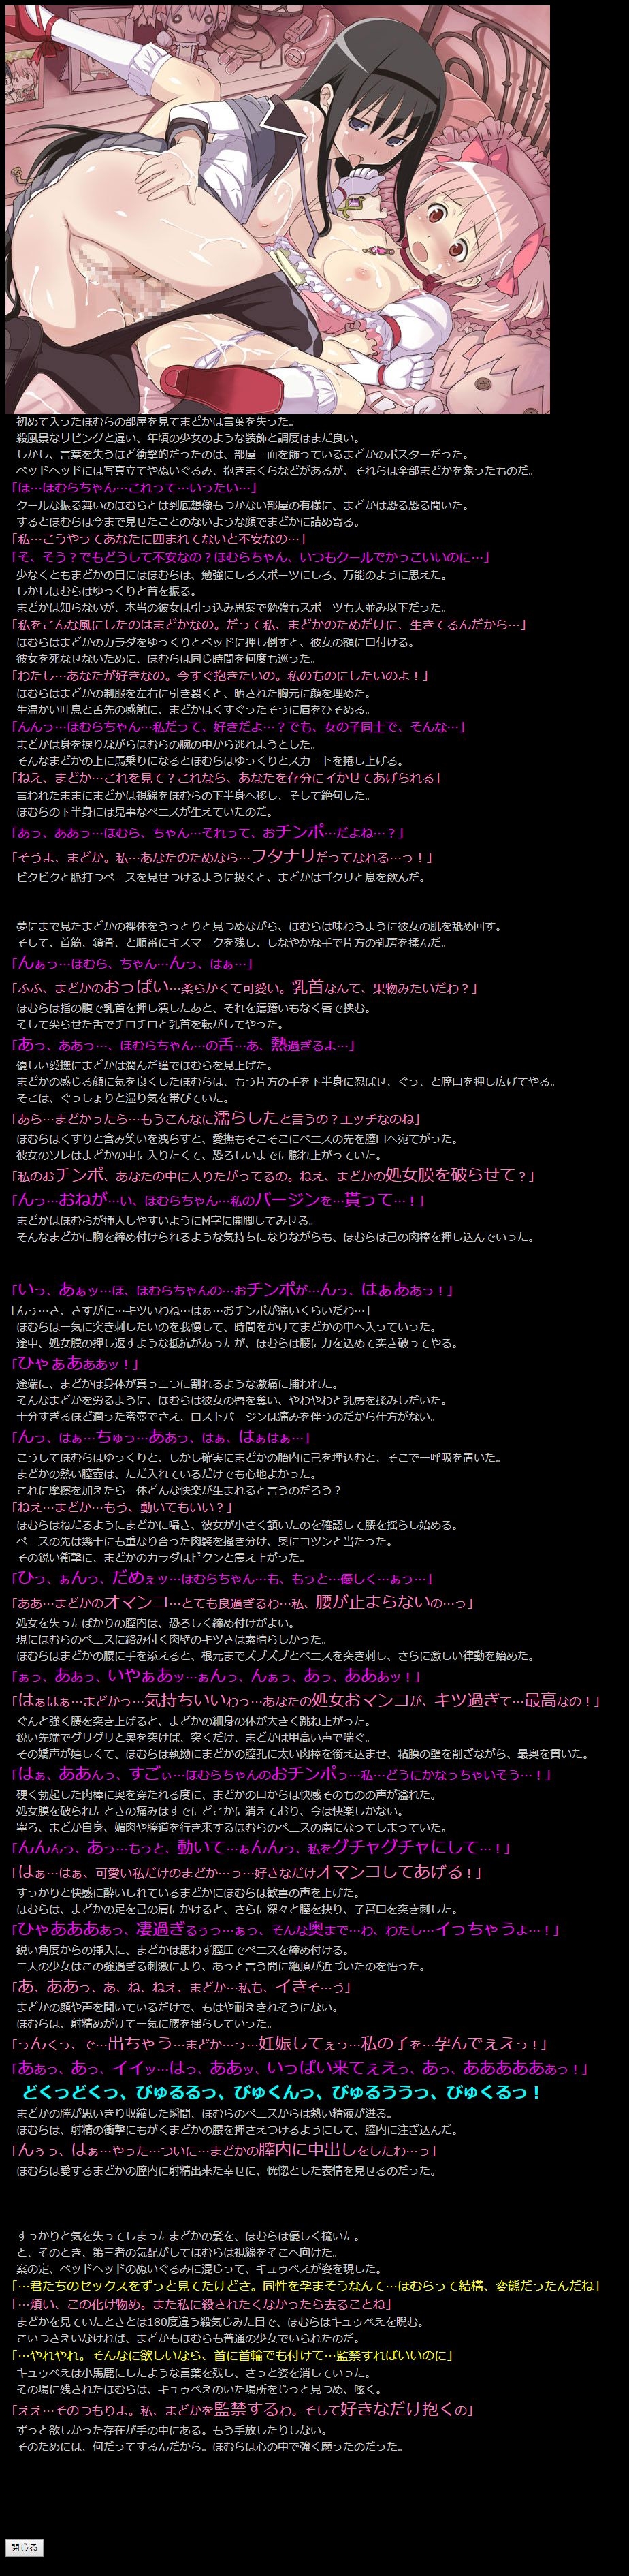 (COMIC1☆5) [LolitaChannel (Arigase Shinji)] Yuumei Chara Kannou Shousetsu CG Shuu No. 185!! Puella Magi Madoka Magica HaaHaa CG Shuu (Puella Magi Madoka Magica) 14